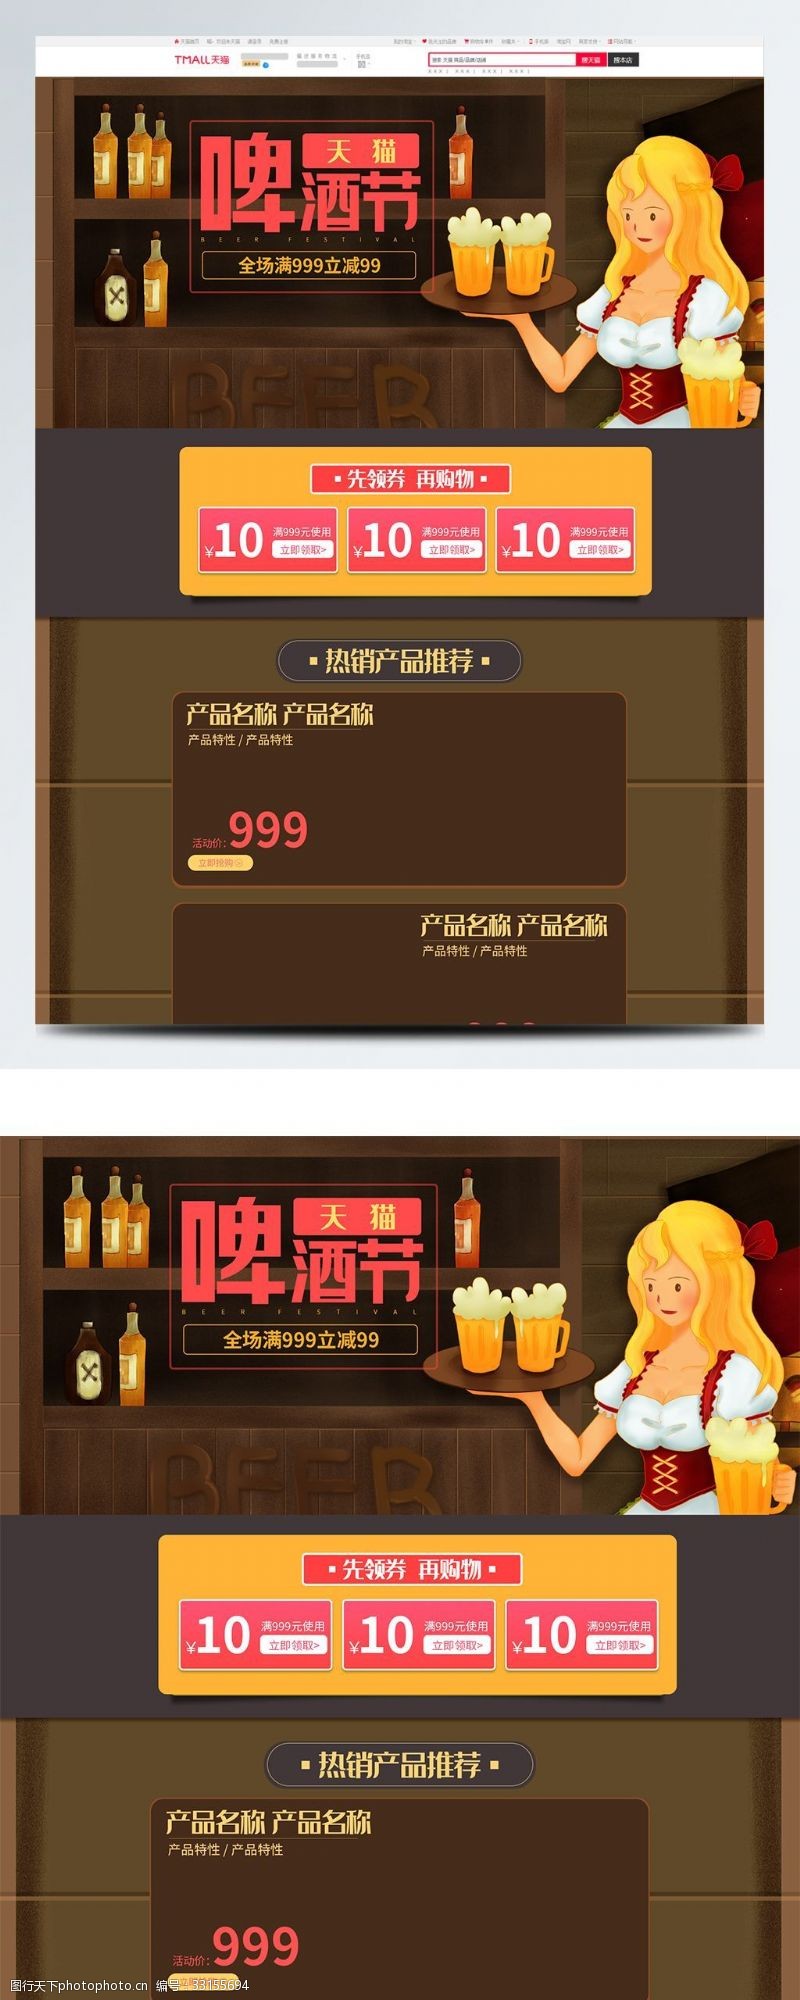 天猫食品专题页电商手绘插画天猫啤酒节活动首页模板